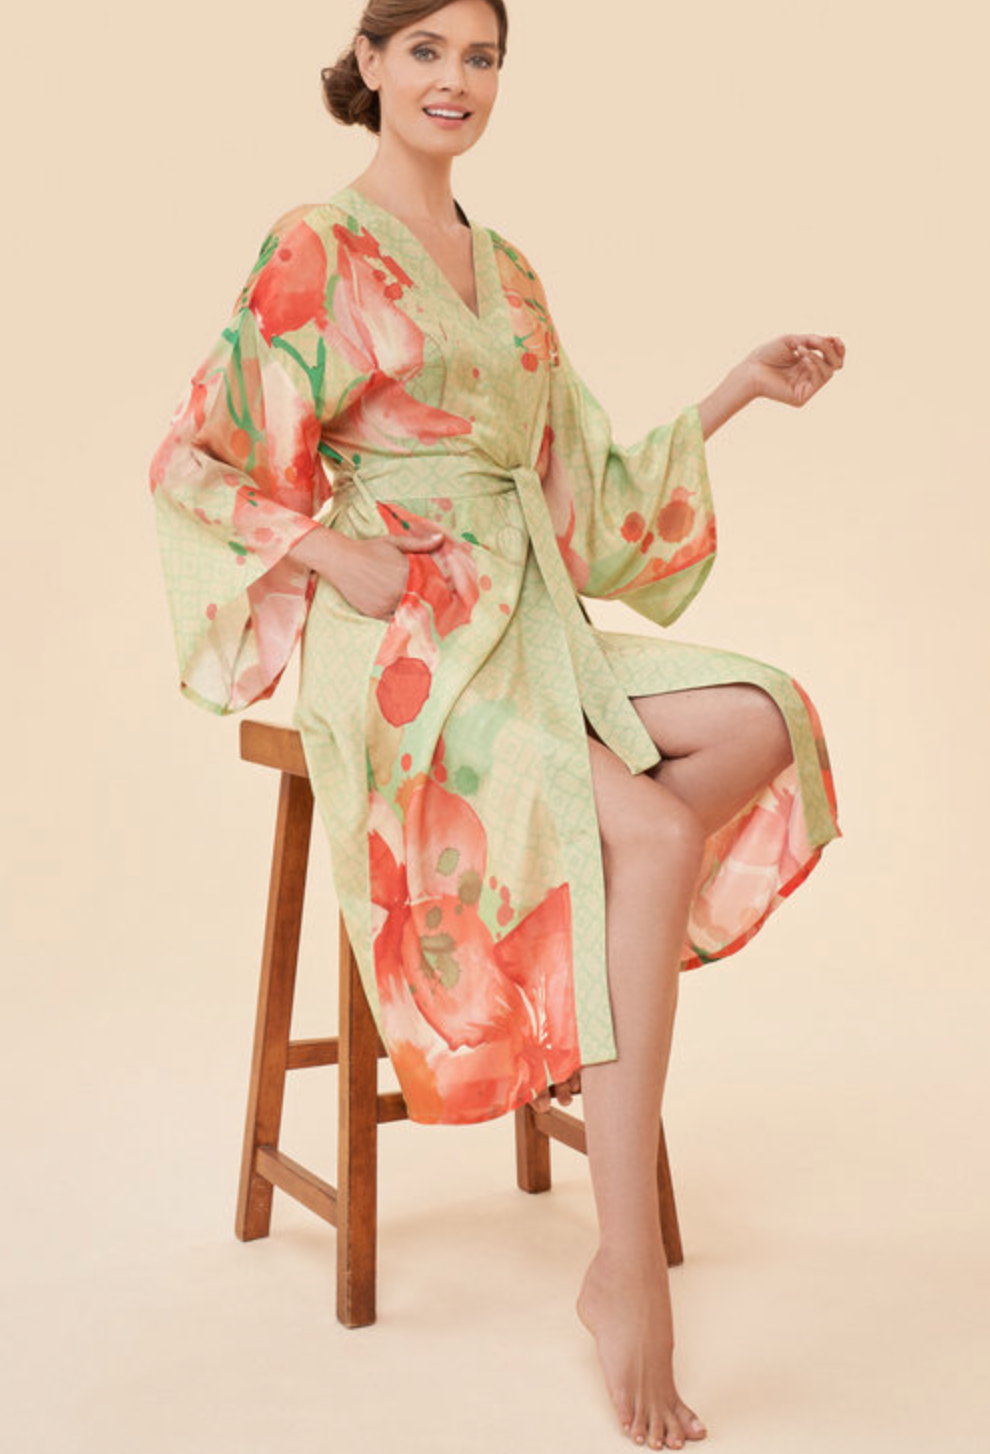 Kimono Gown by Powder